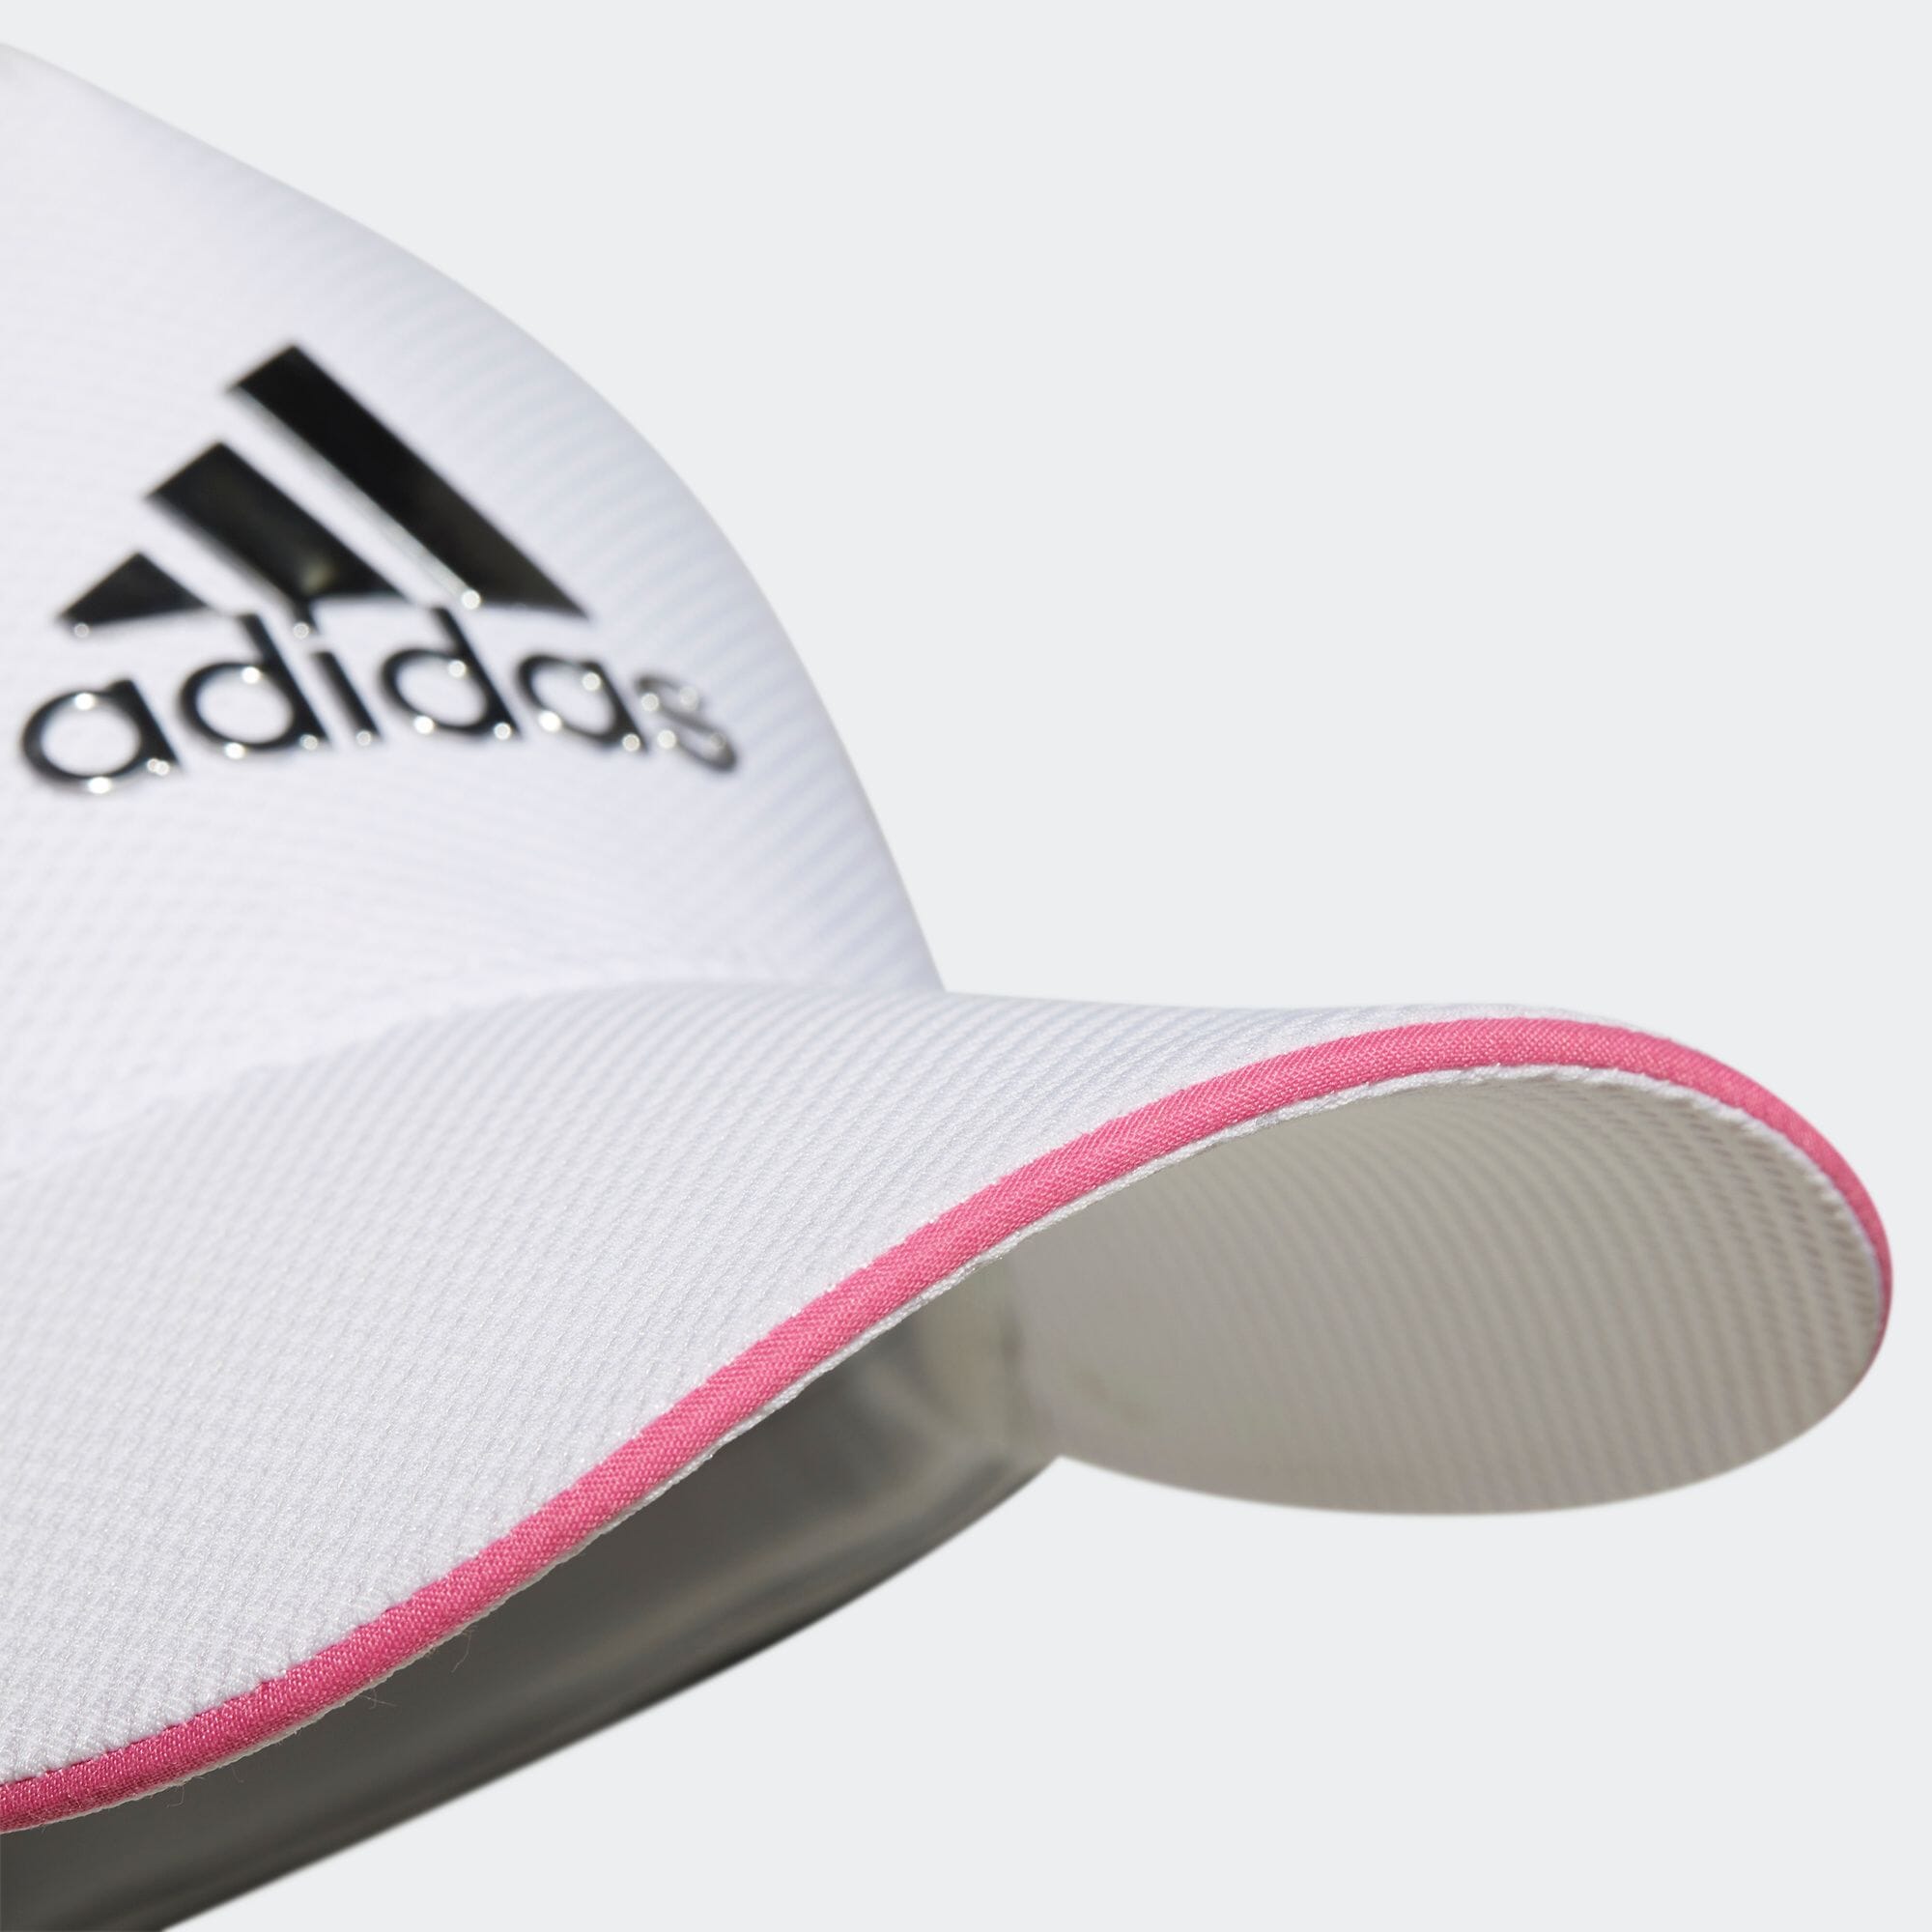 返品可 アディダス公式 アクセサリー 帽子 ゴルフ adidas メタルロゴ キャップ Gnot wicol 最大75%OFFクーポン